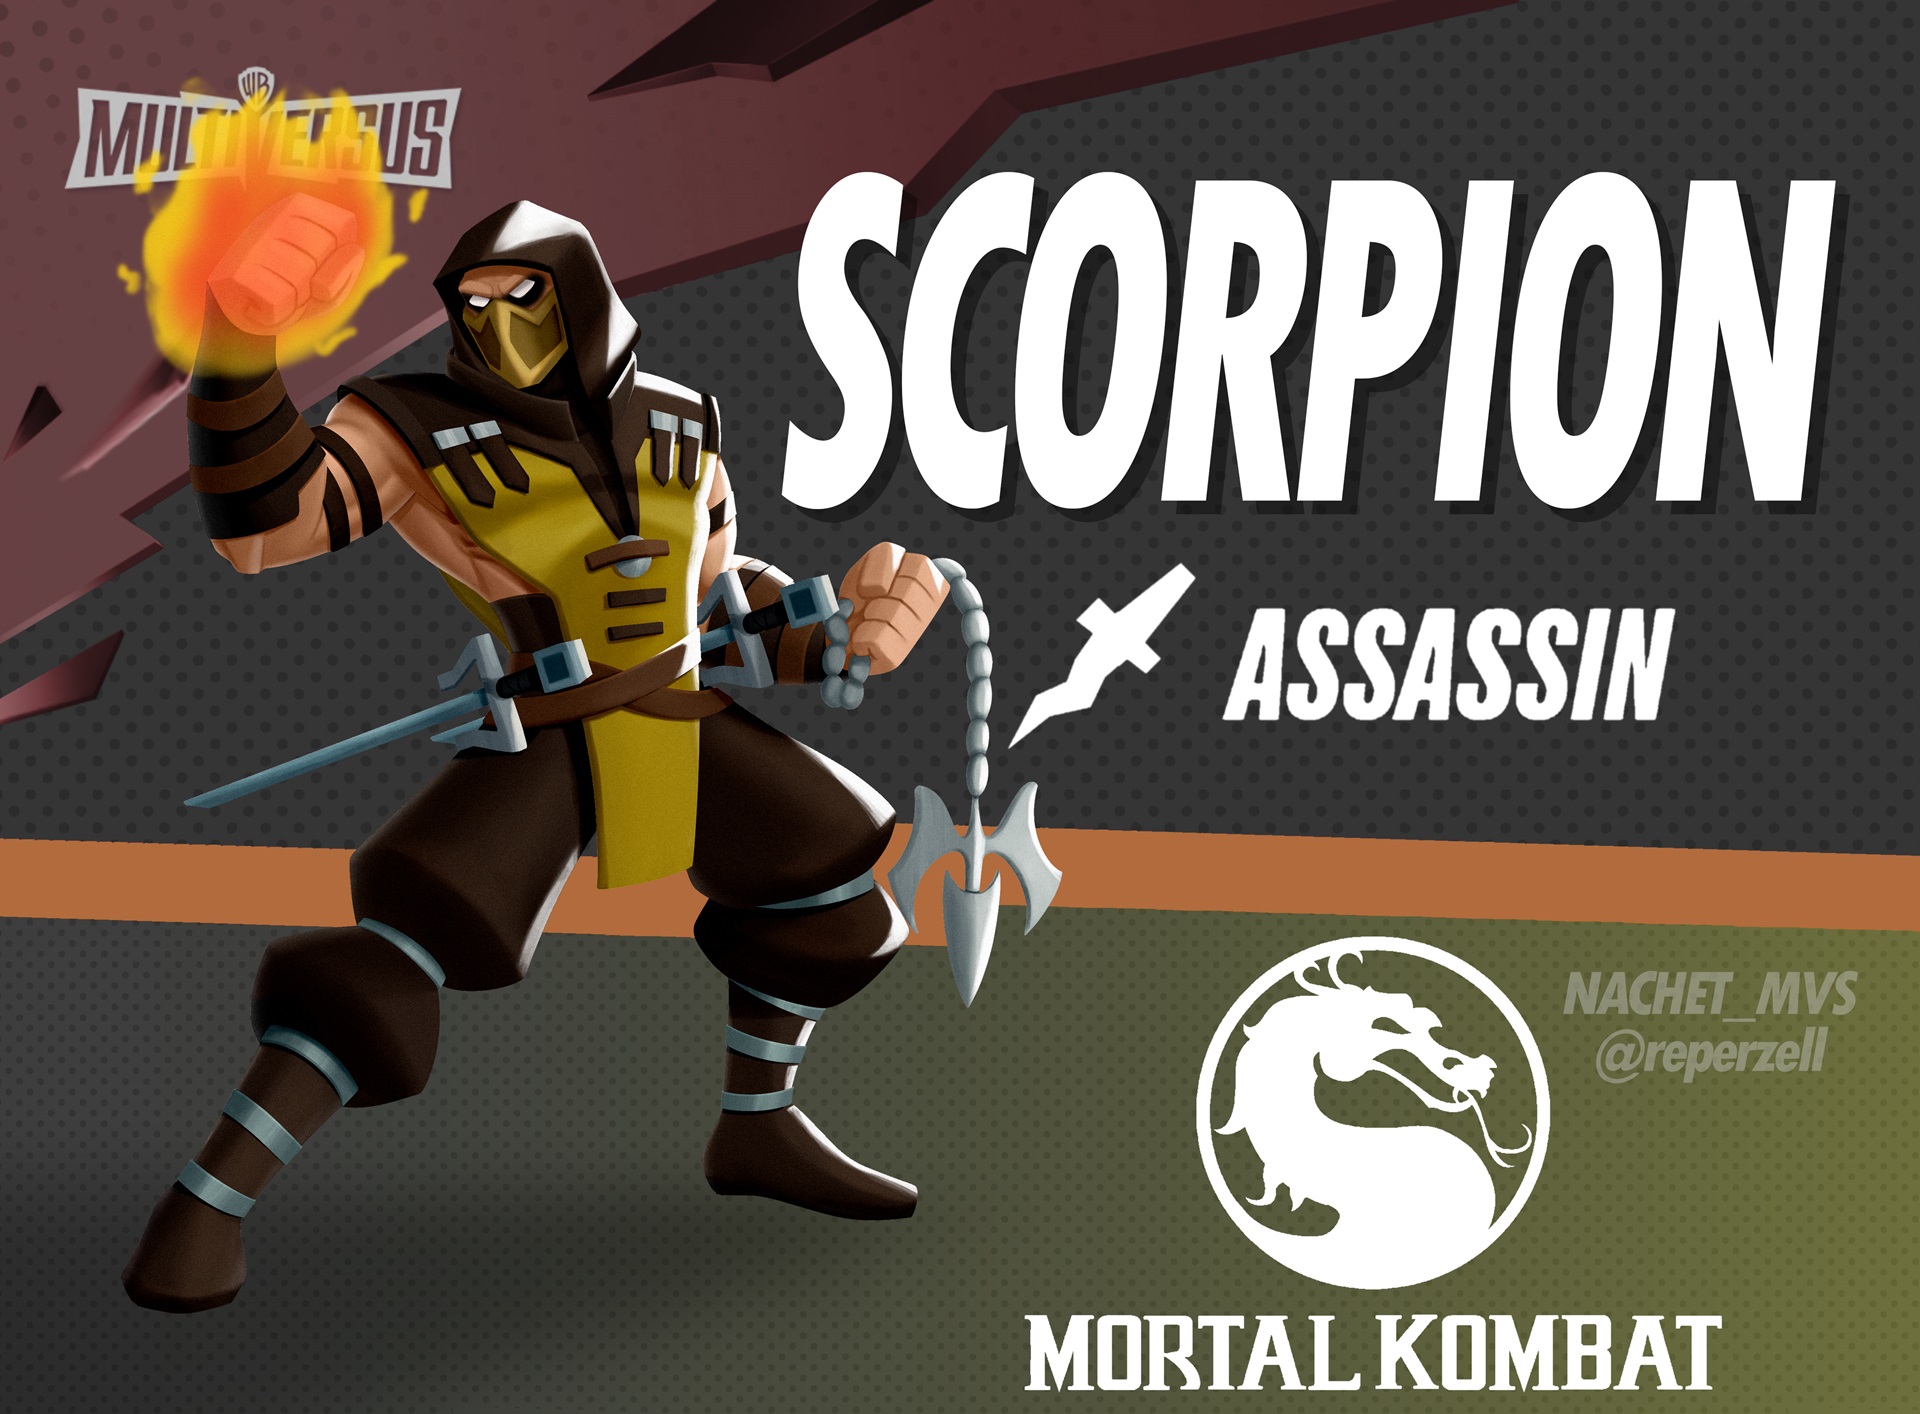 پست طرفداری از شخصیت Scorpion در بازی MultiVersus